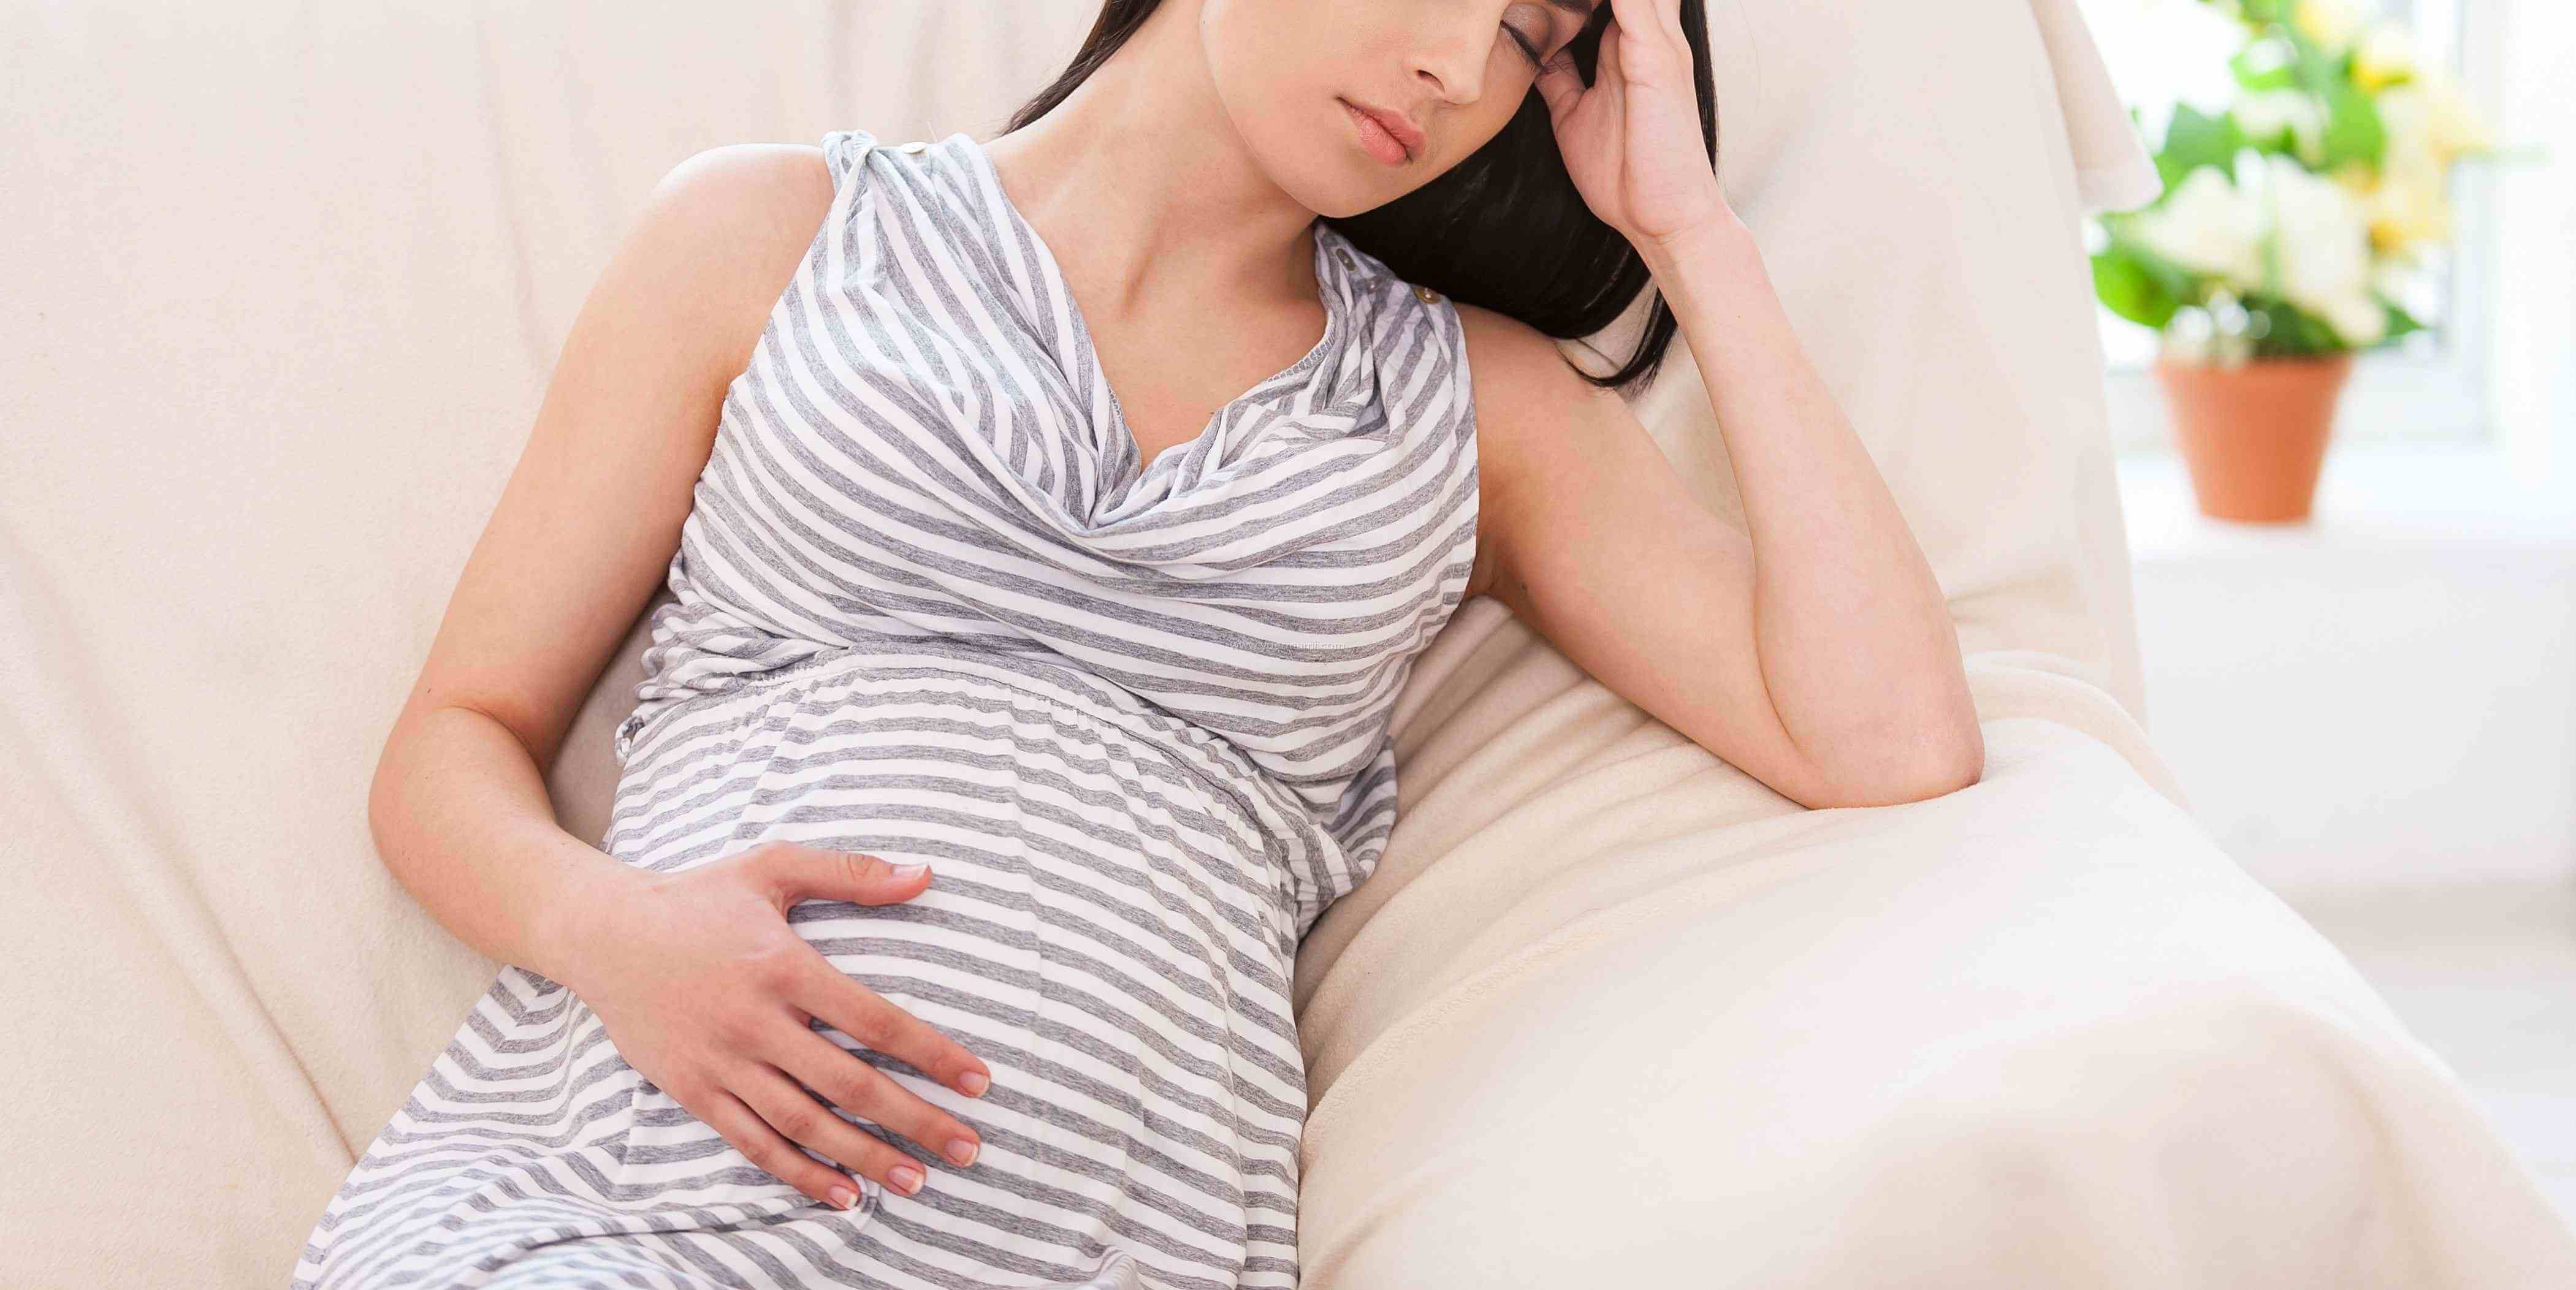 孕期女性常会出现异常情况